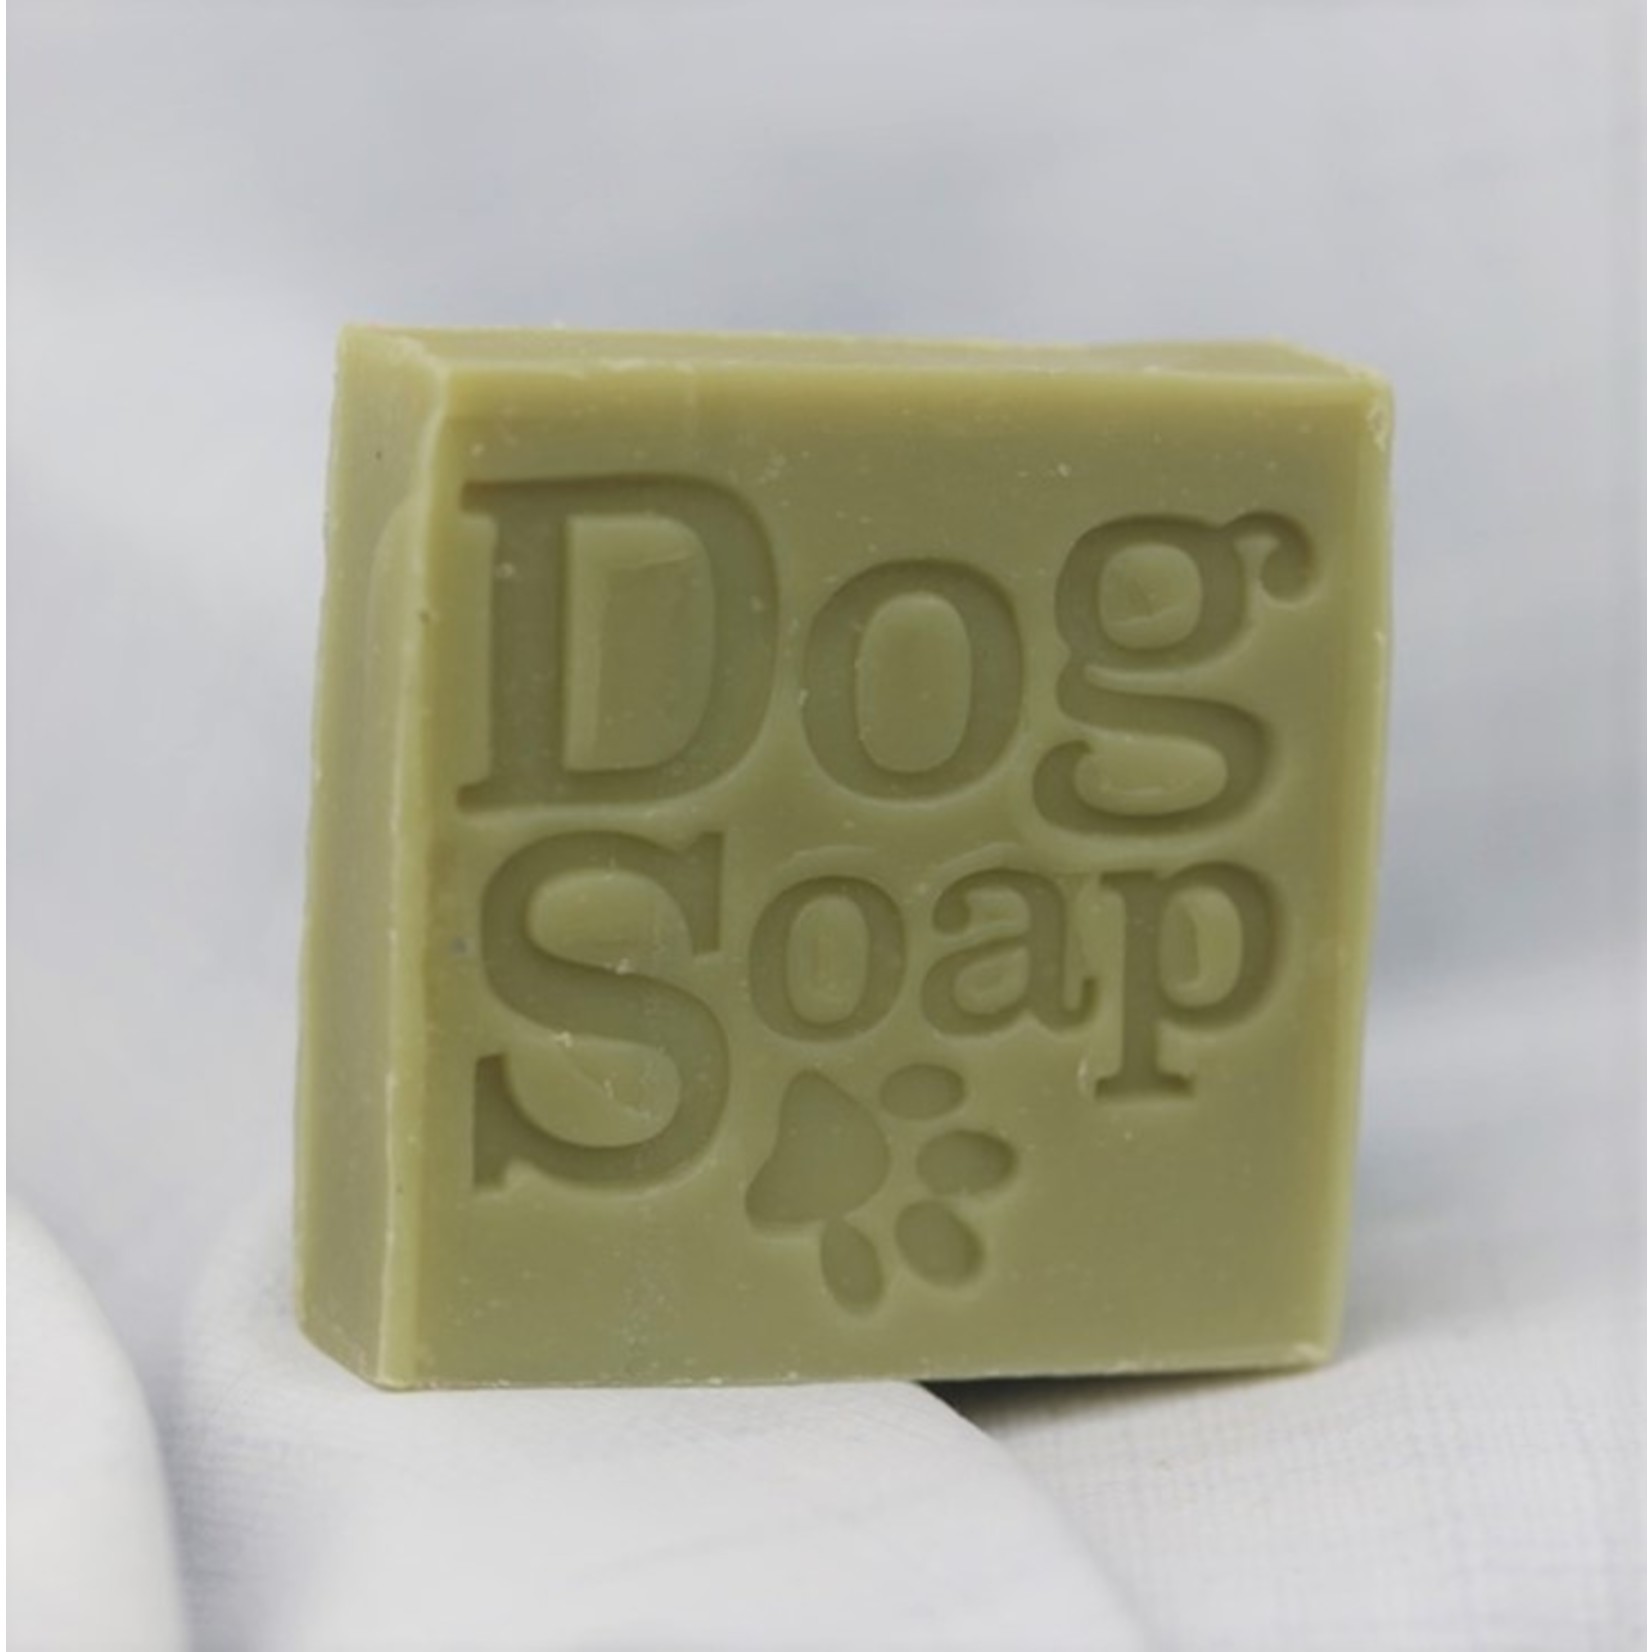 Corrynne's Corrynne's Happy Dog Soap Bar